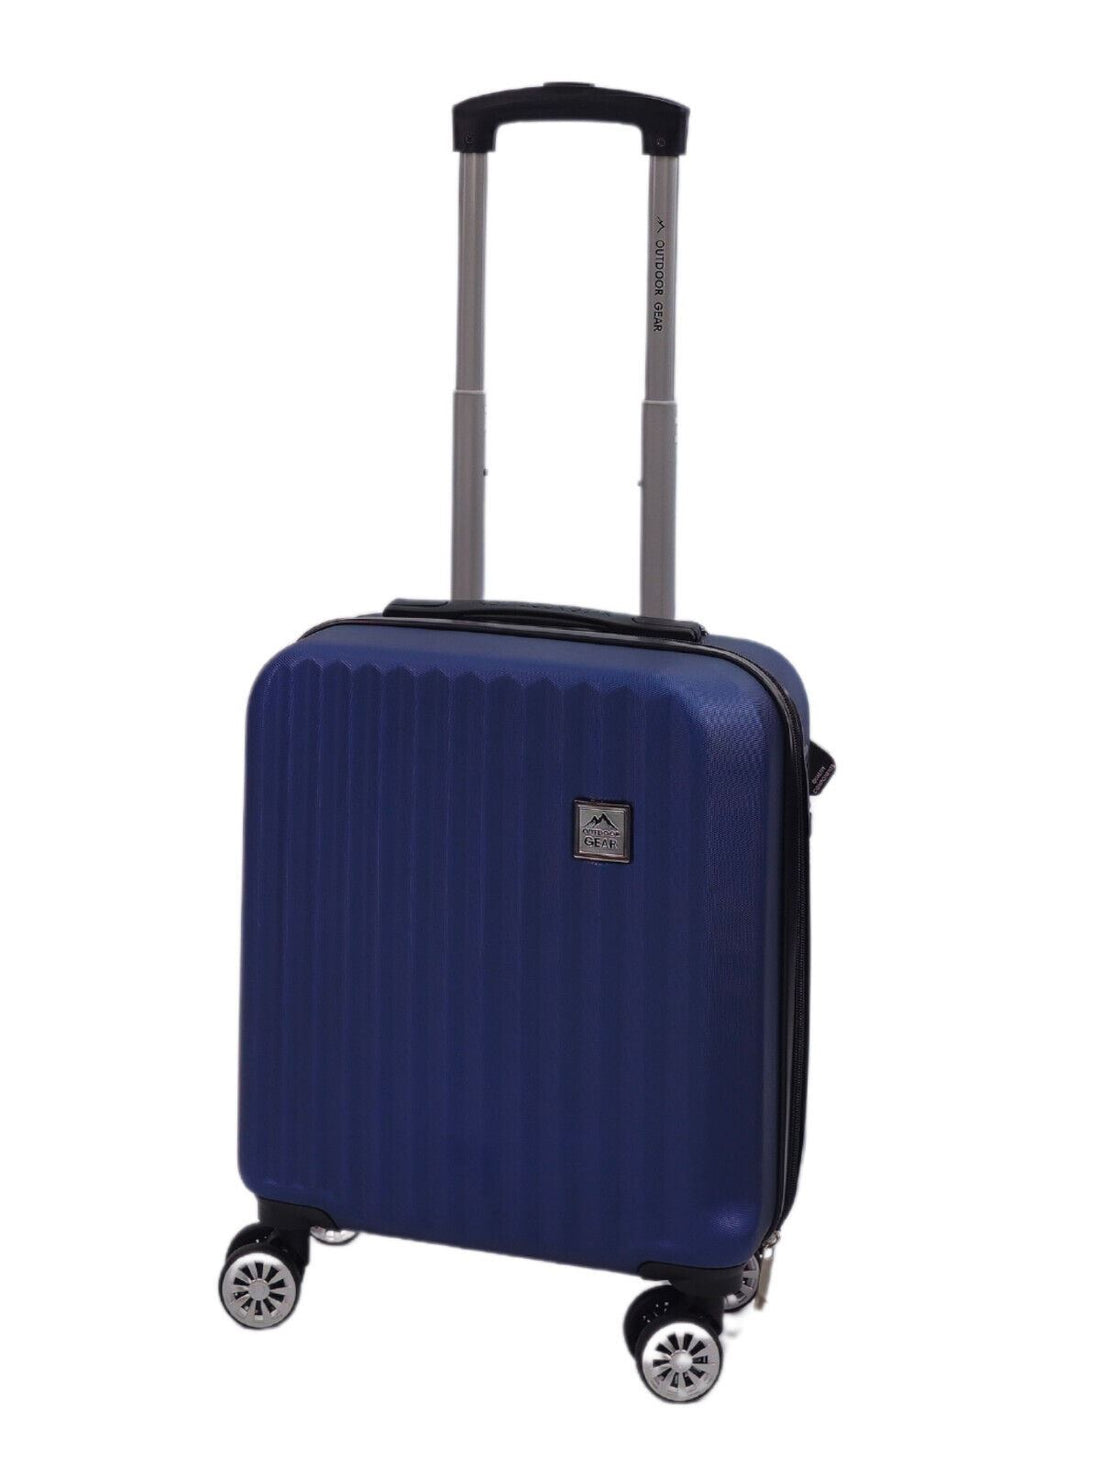 Albertville Underseat Hard Shell Suitcase in Blue